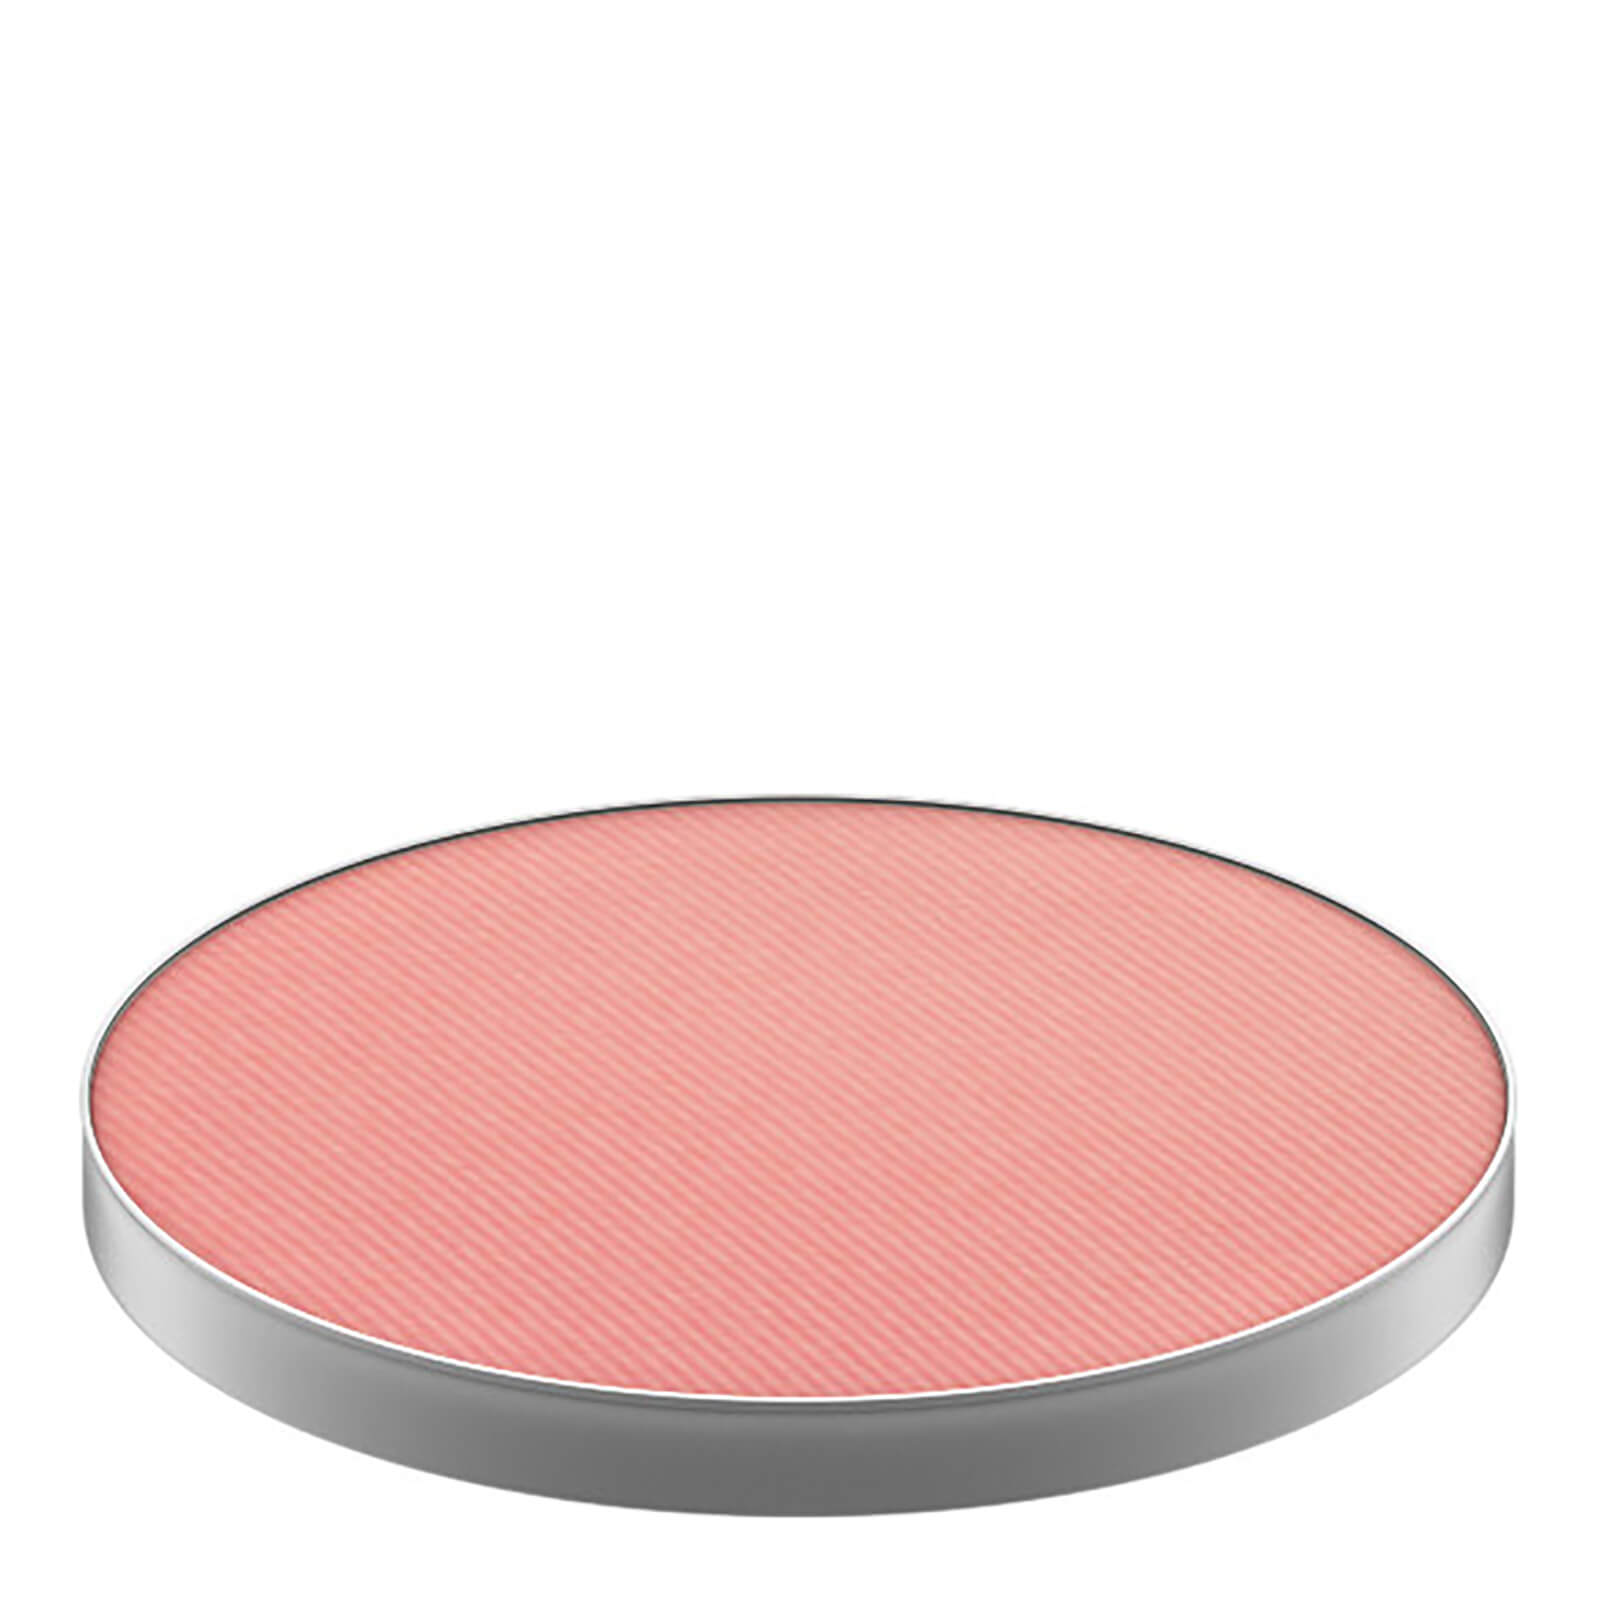 Image of Ricambio Fard in polvere MAC per Palette (Varie tonalità) - Melba